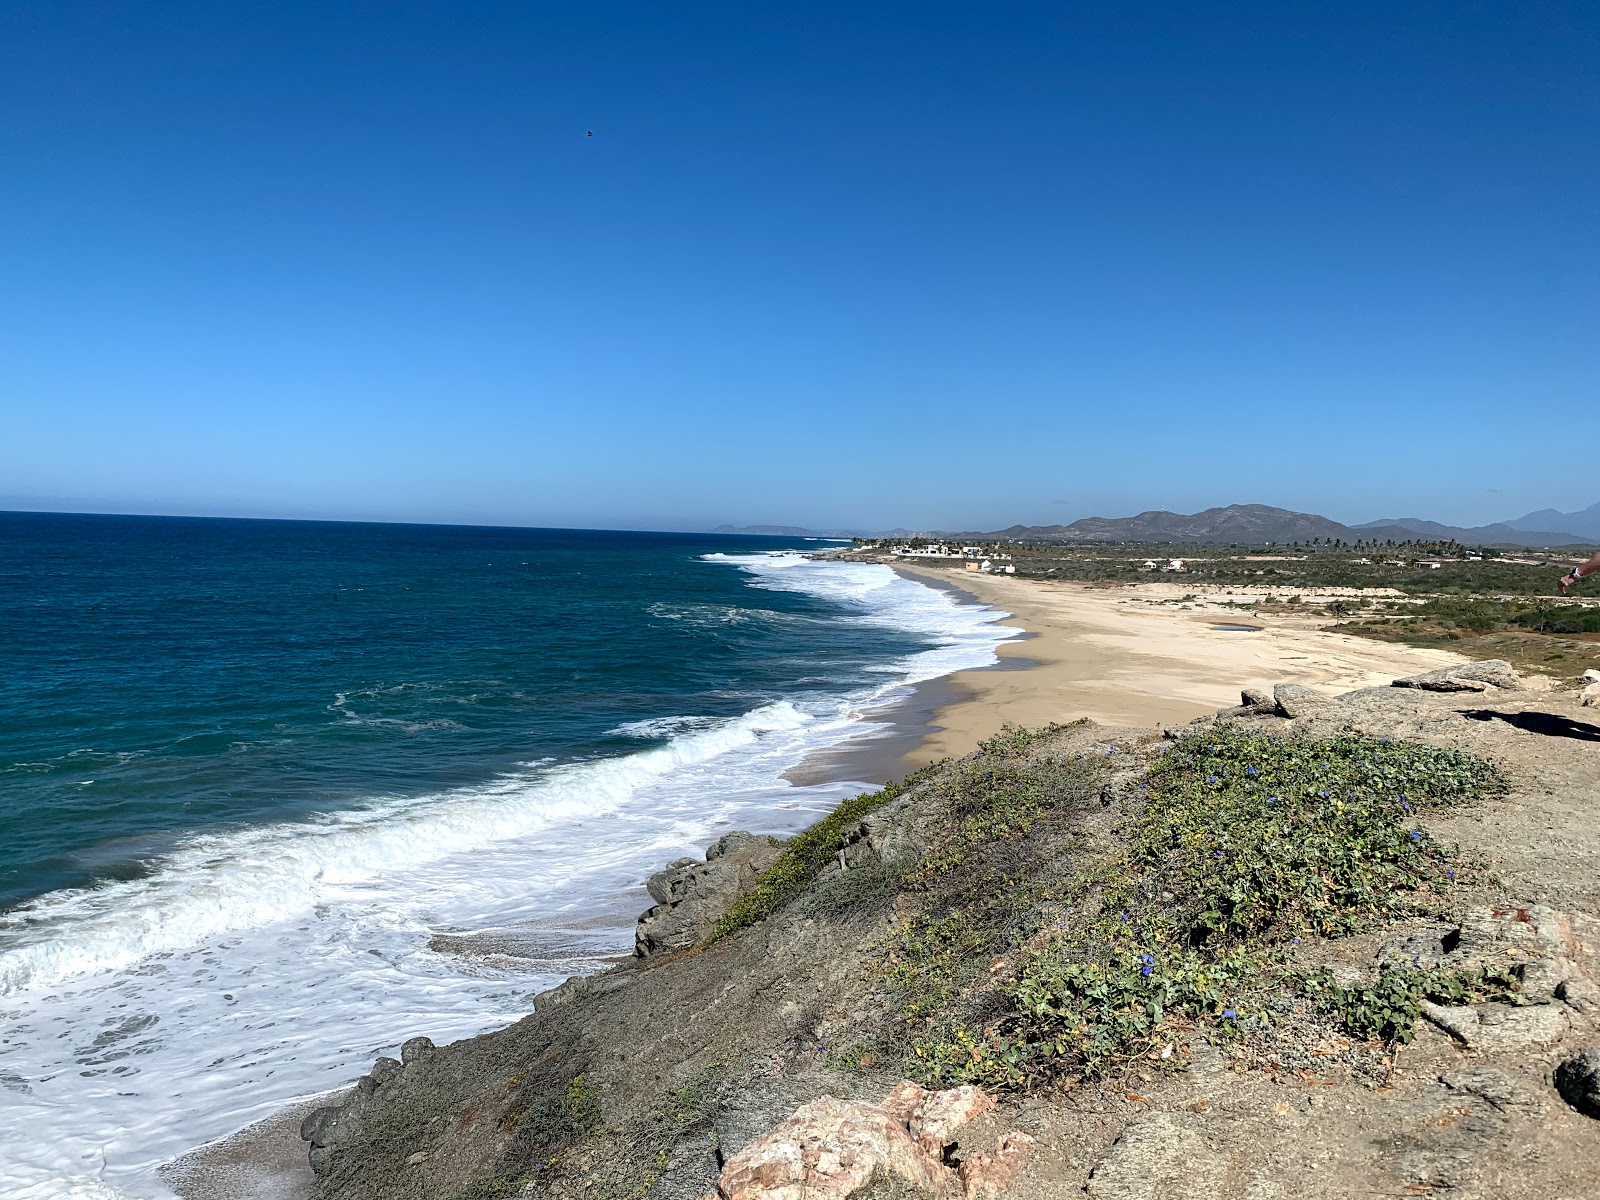 Secret Rocks beach'in fotoğrafı geniş plaj ile birlikte